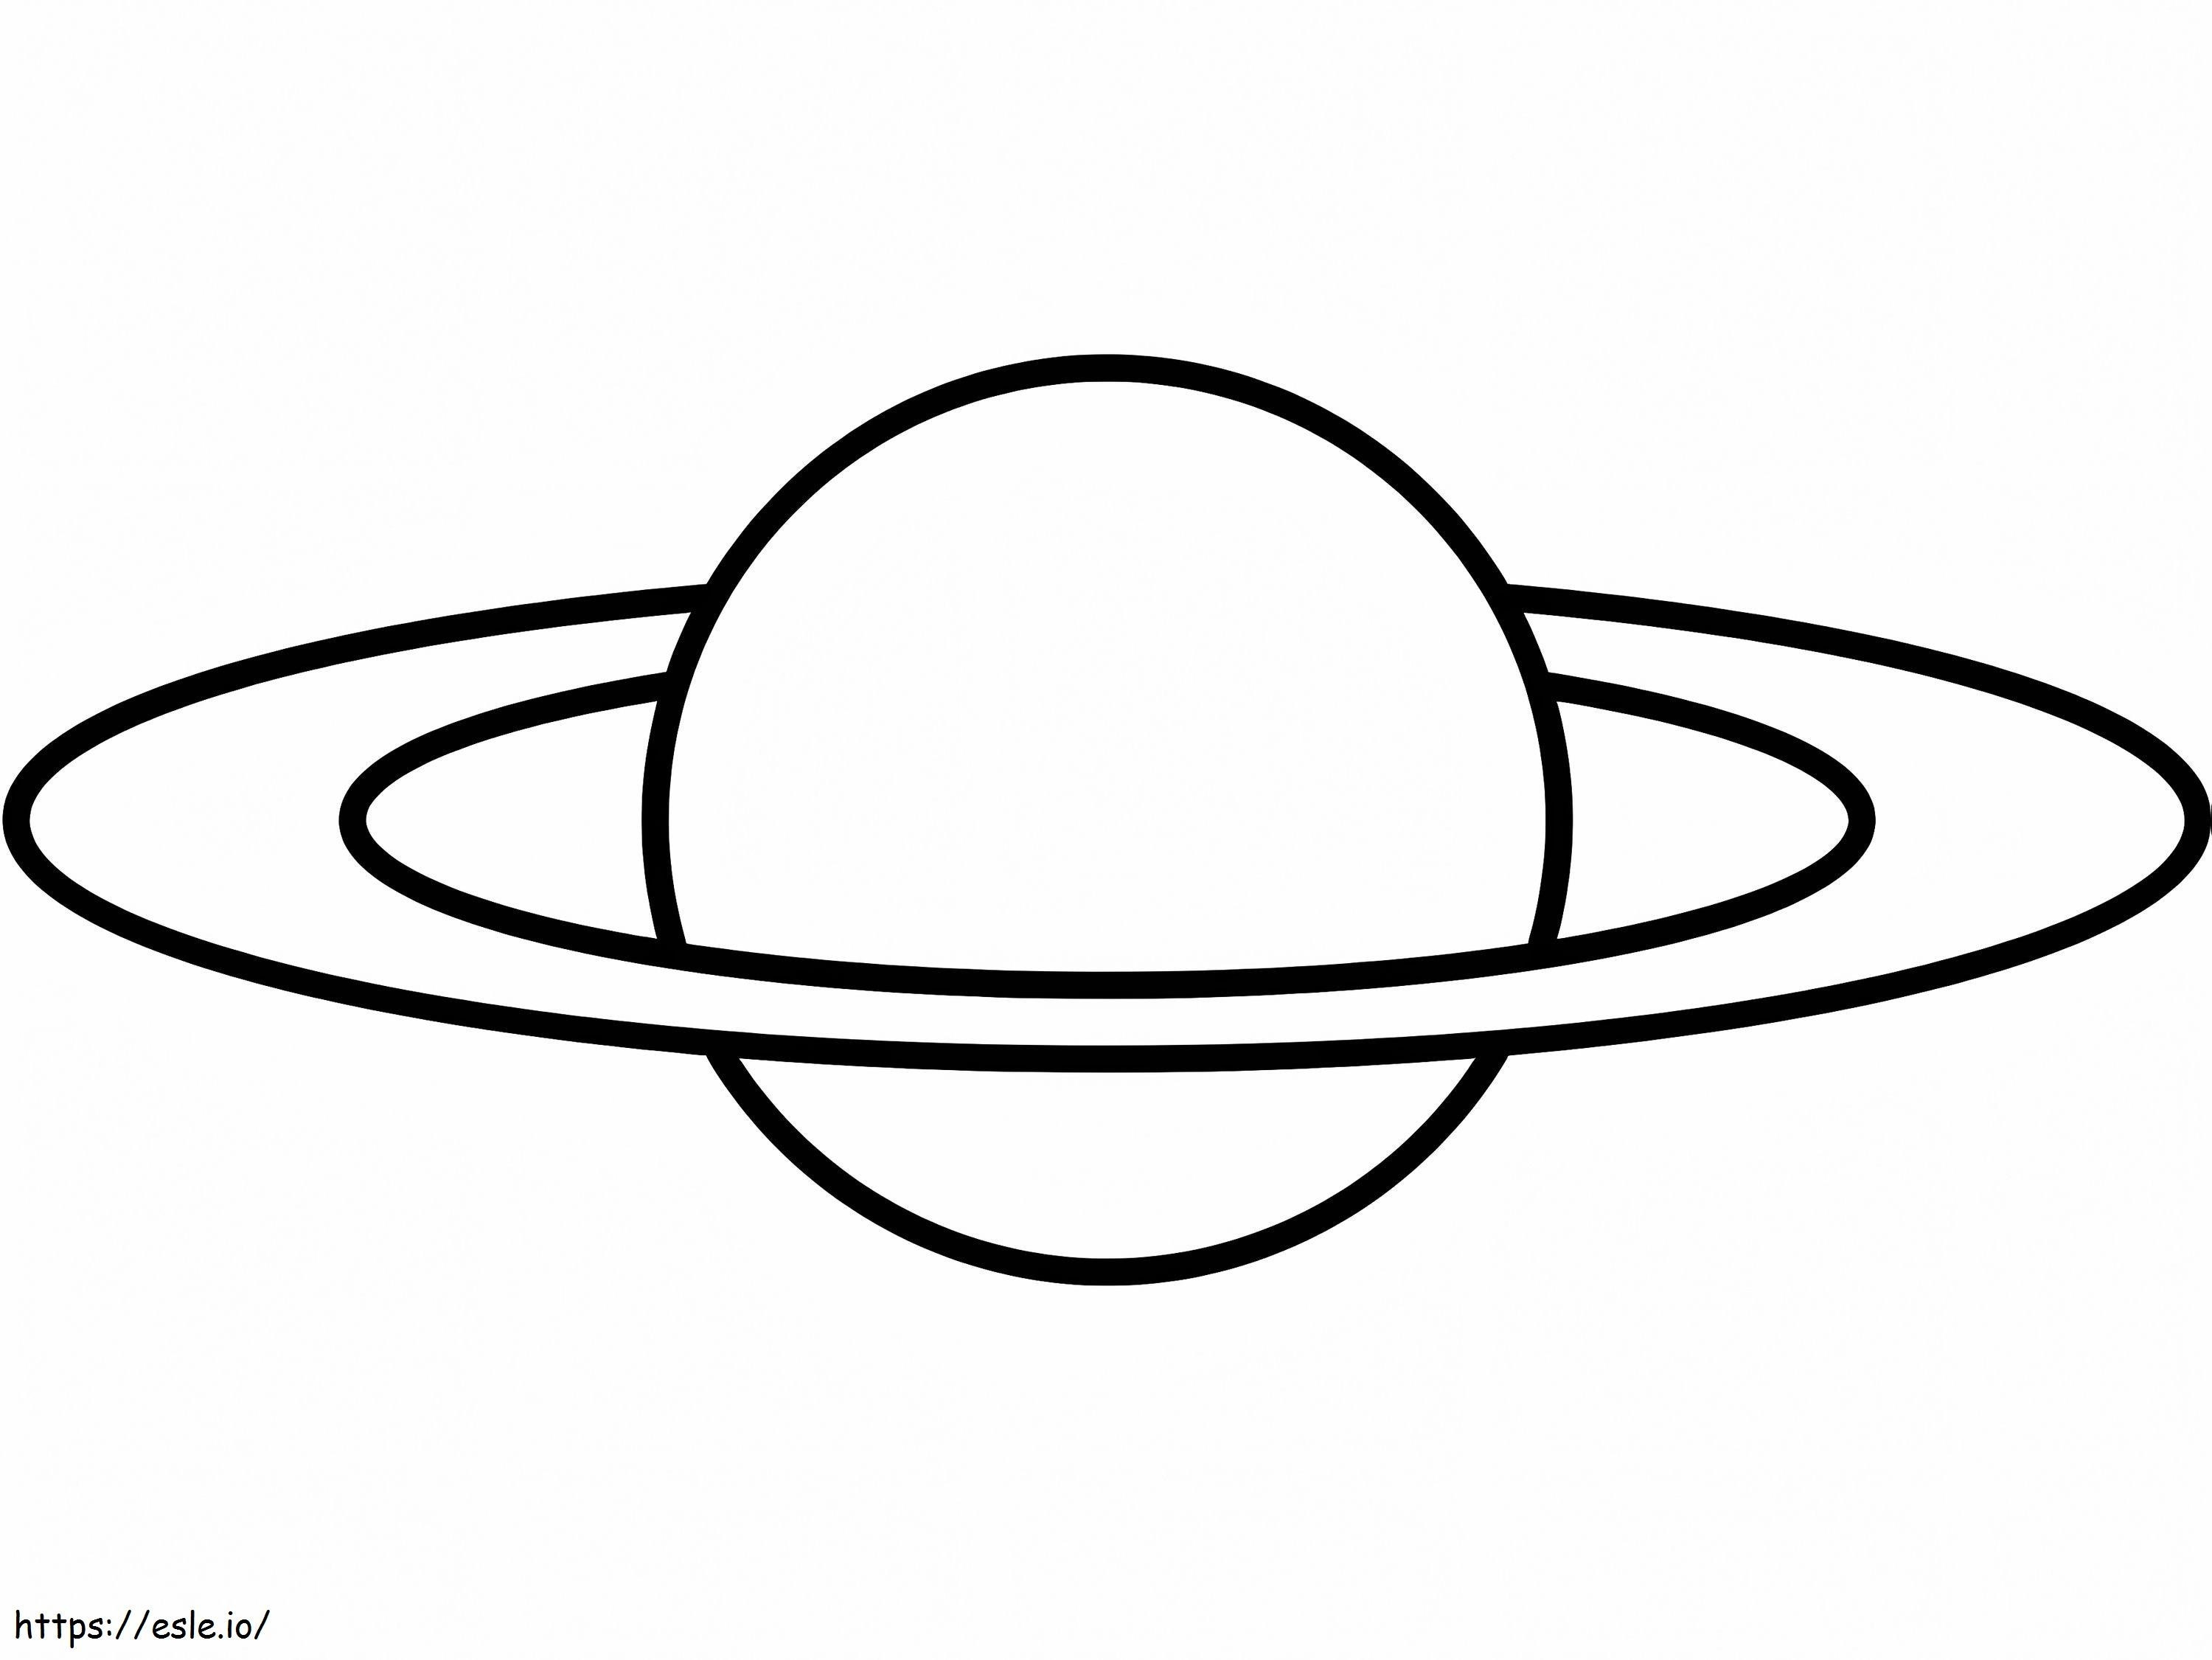 Prosty Saturn 2 kolorowanka